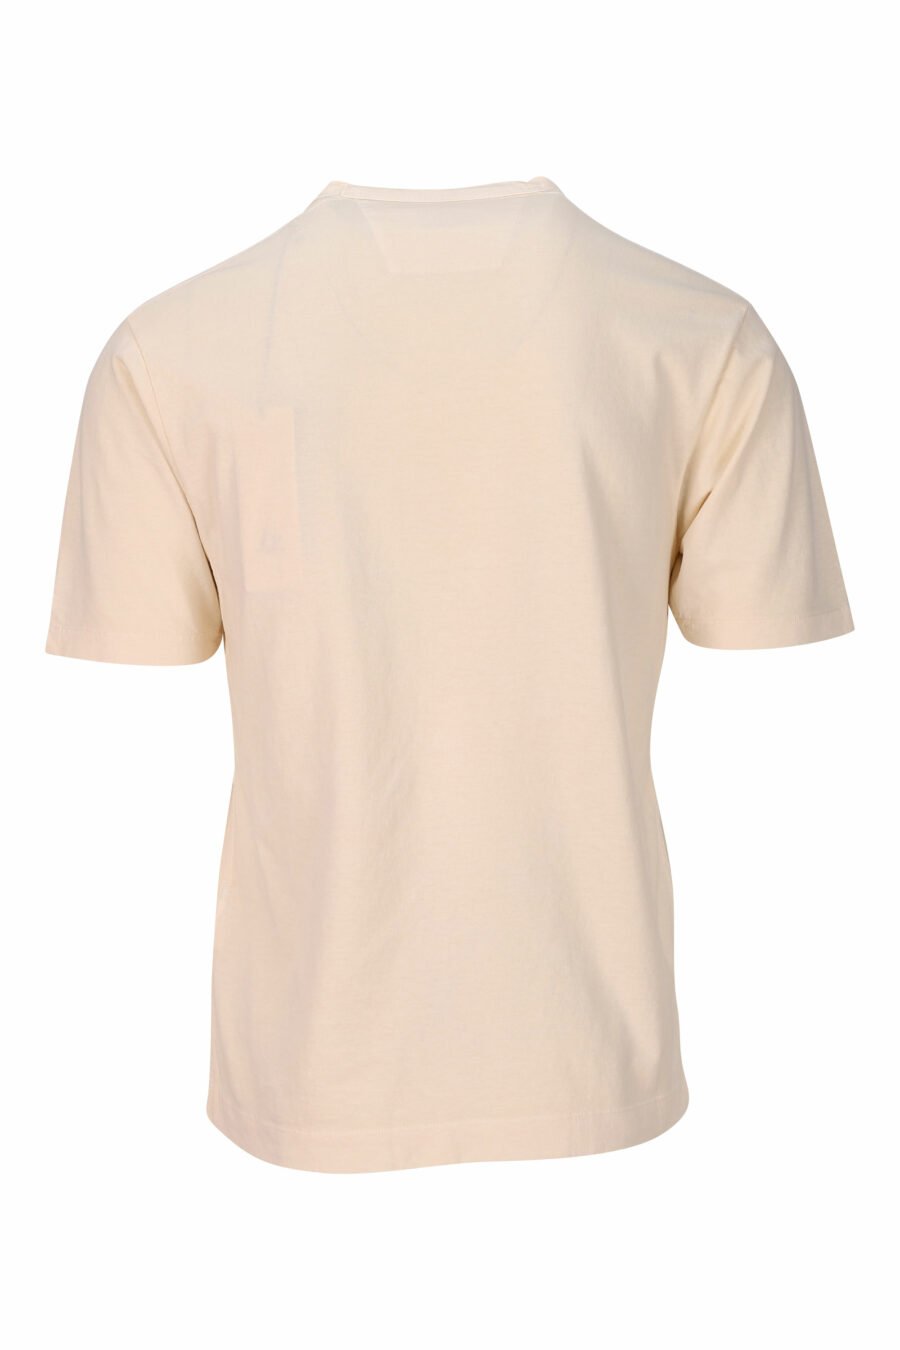 Camiseta beige con maxilogo monocromático bordado "1020" - 7620943818420 1